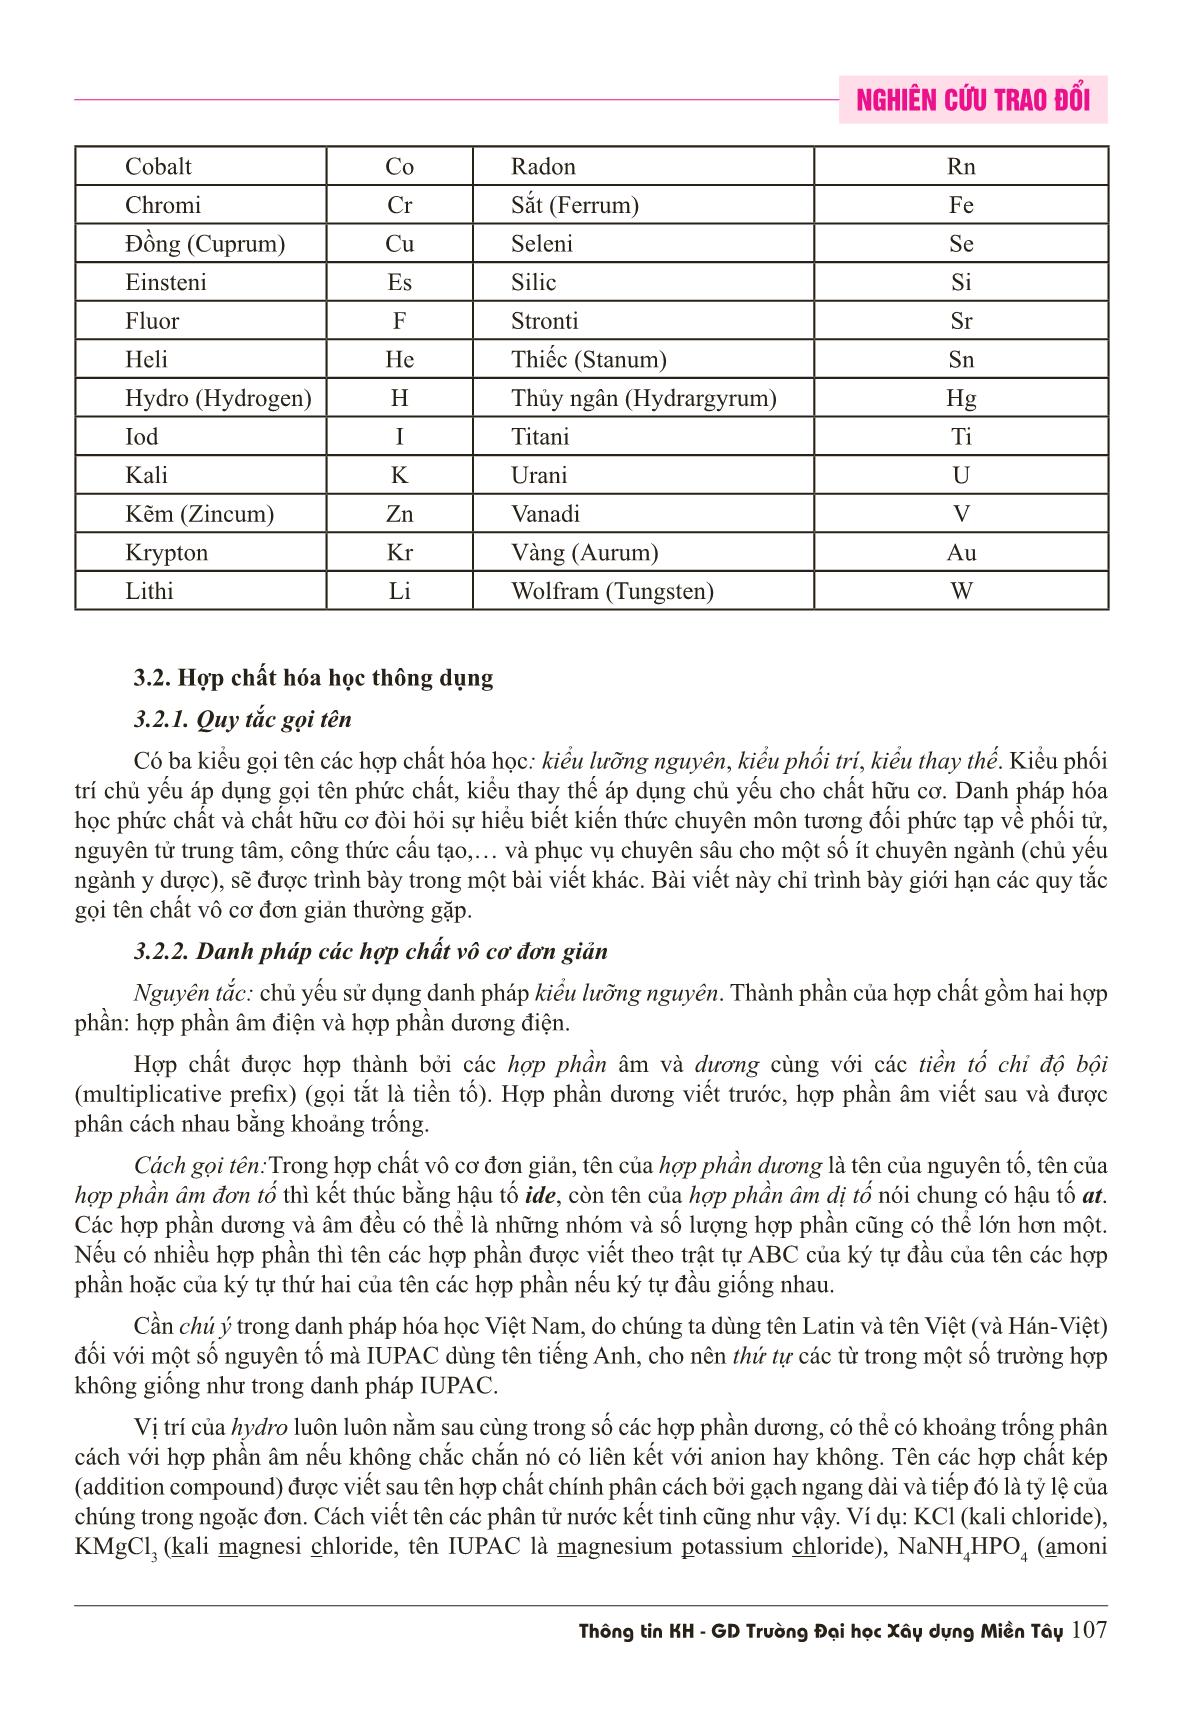 Áp dụng các quy tắc phiên chuyển và danh pháp iupac vào danh pháp hóa học Việt Nam trang 5